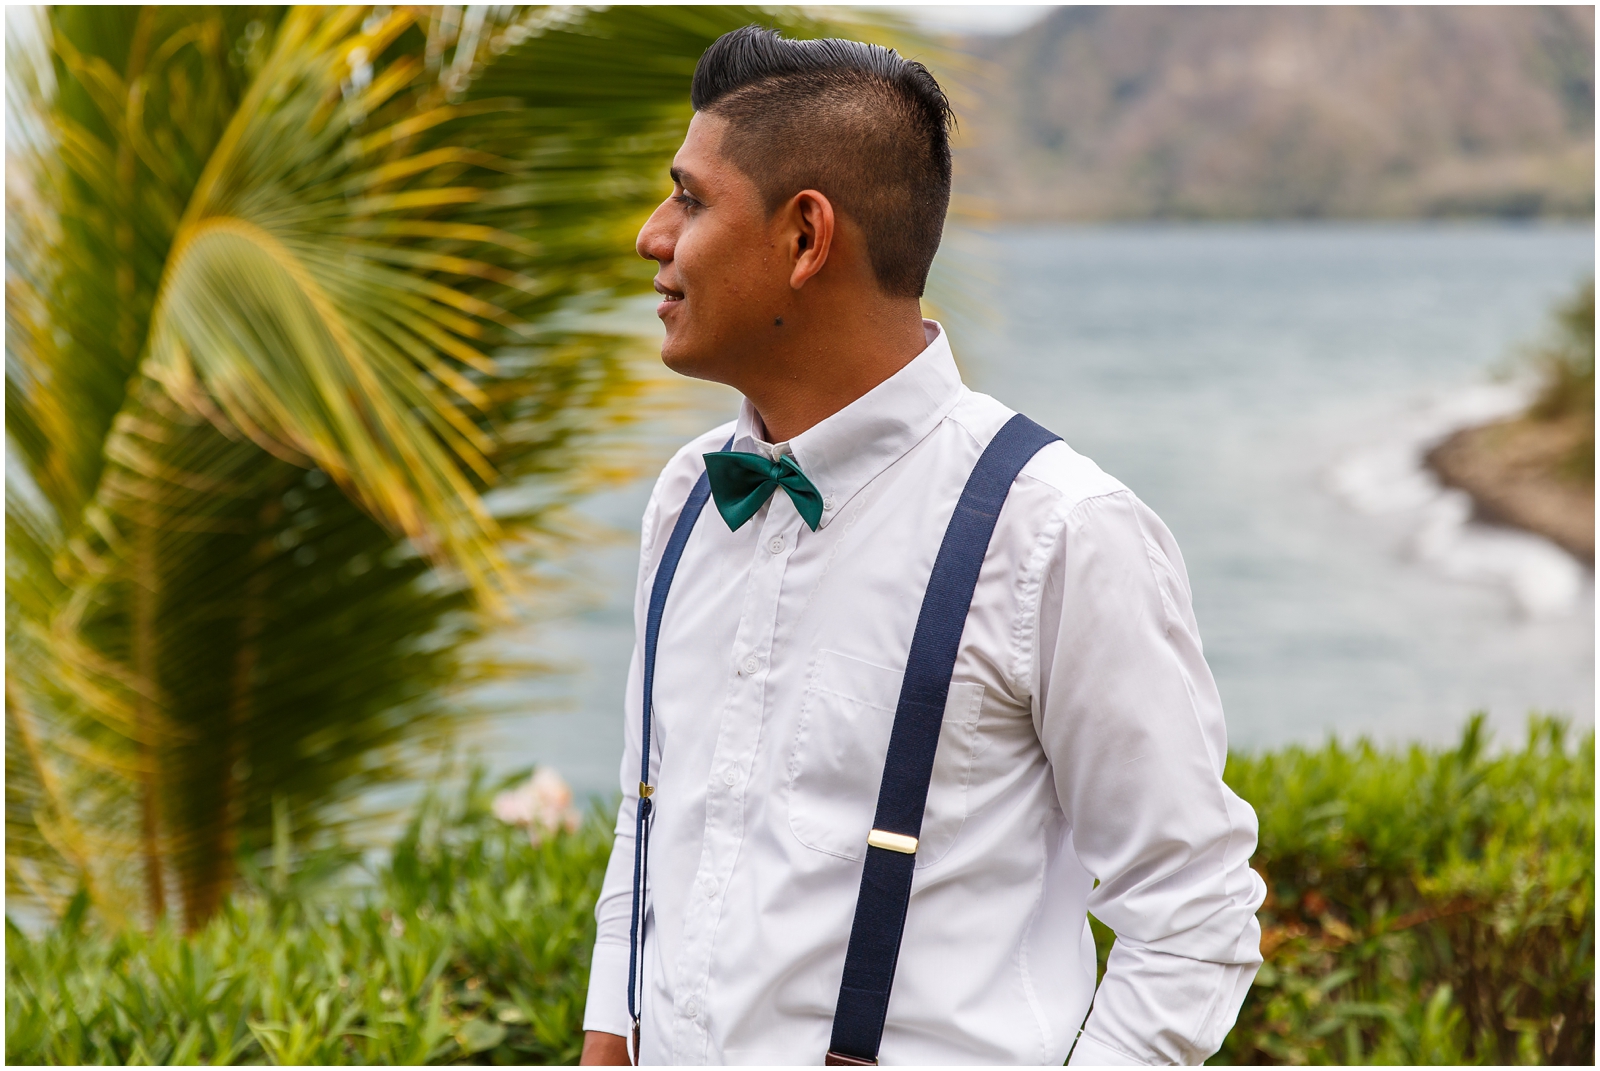 A groom at his small, Nicaraguan lakeside wedding.